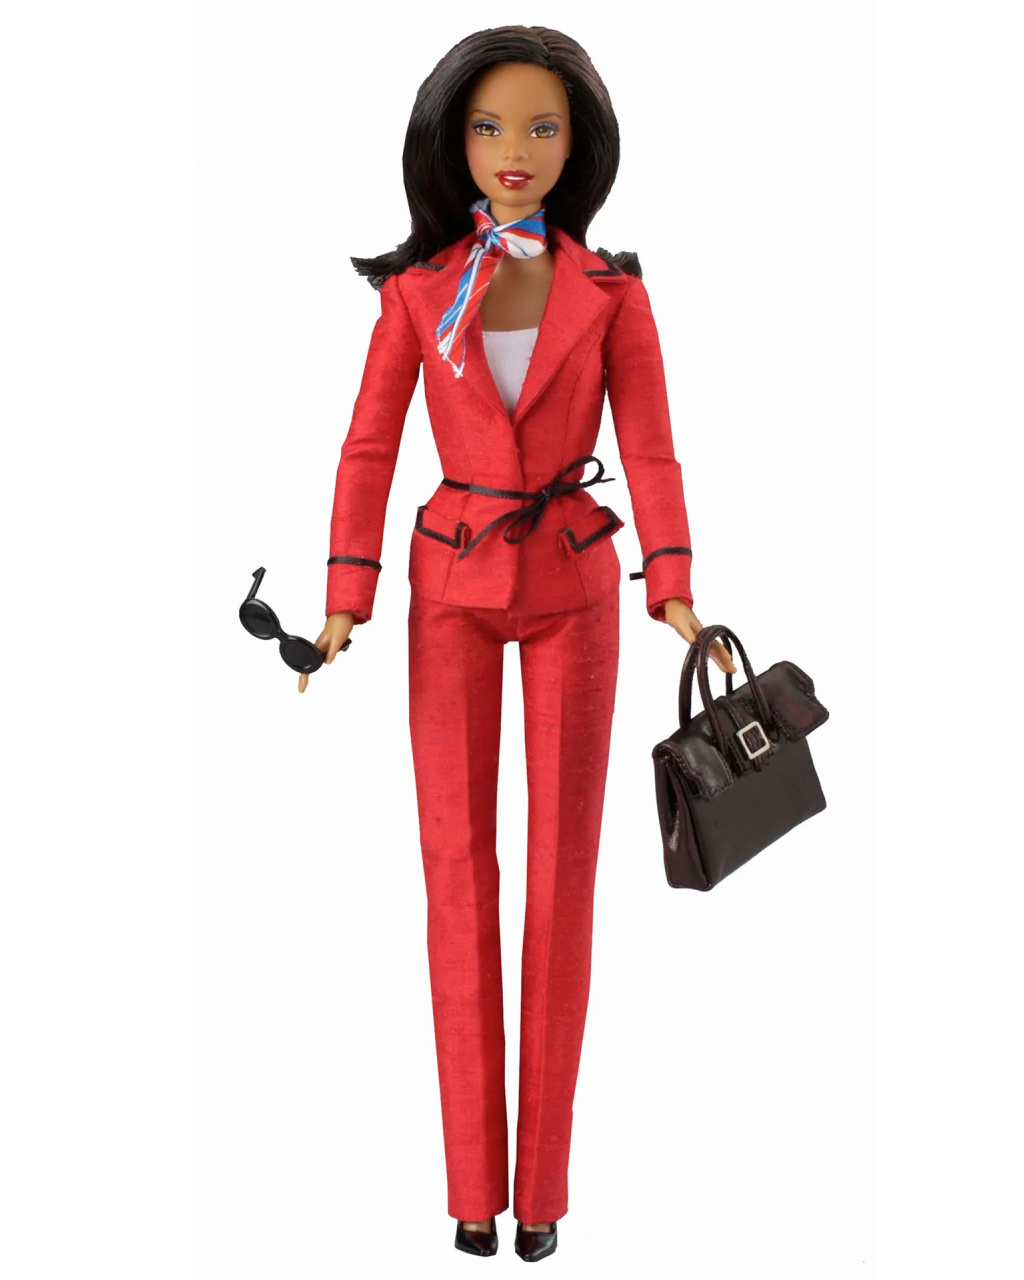 Barbie For President 2004